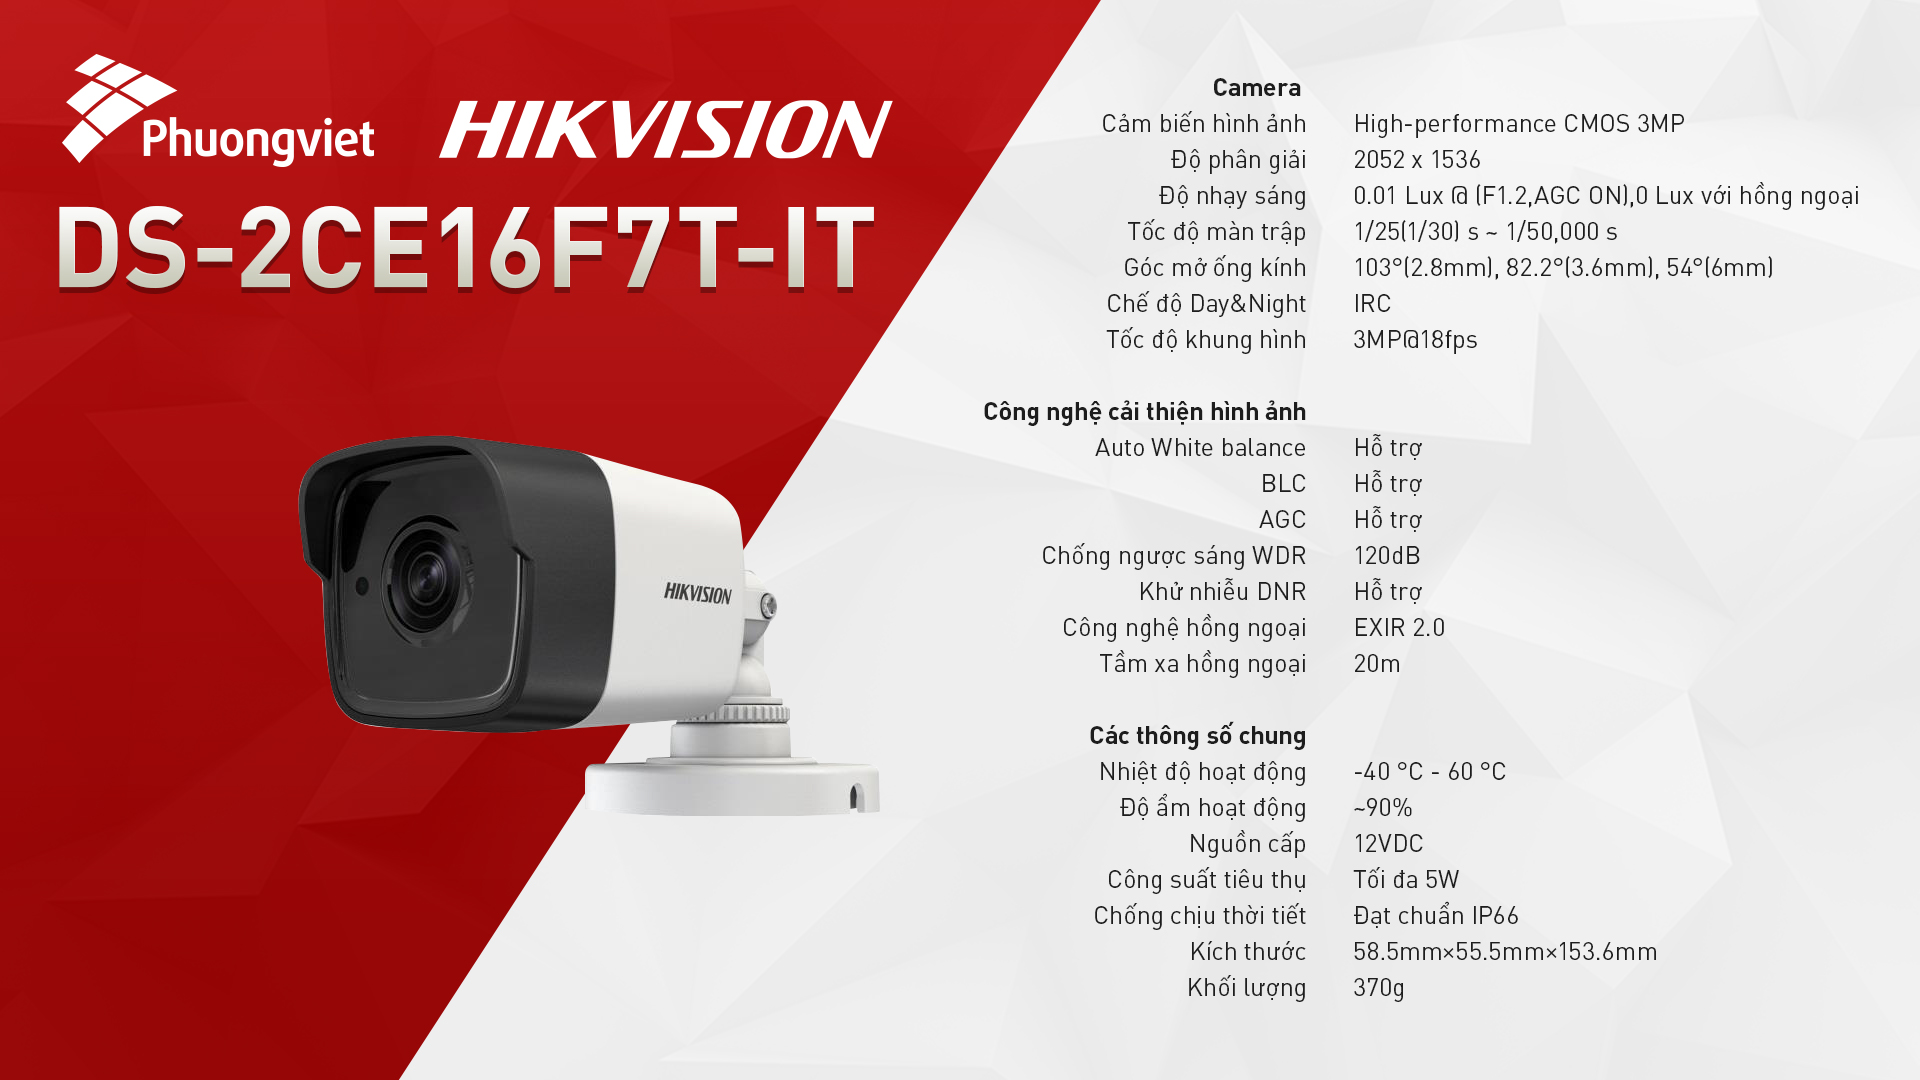 Thông số kỹ thuật được công bố từ HIKVISION - Camera Phương Việt